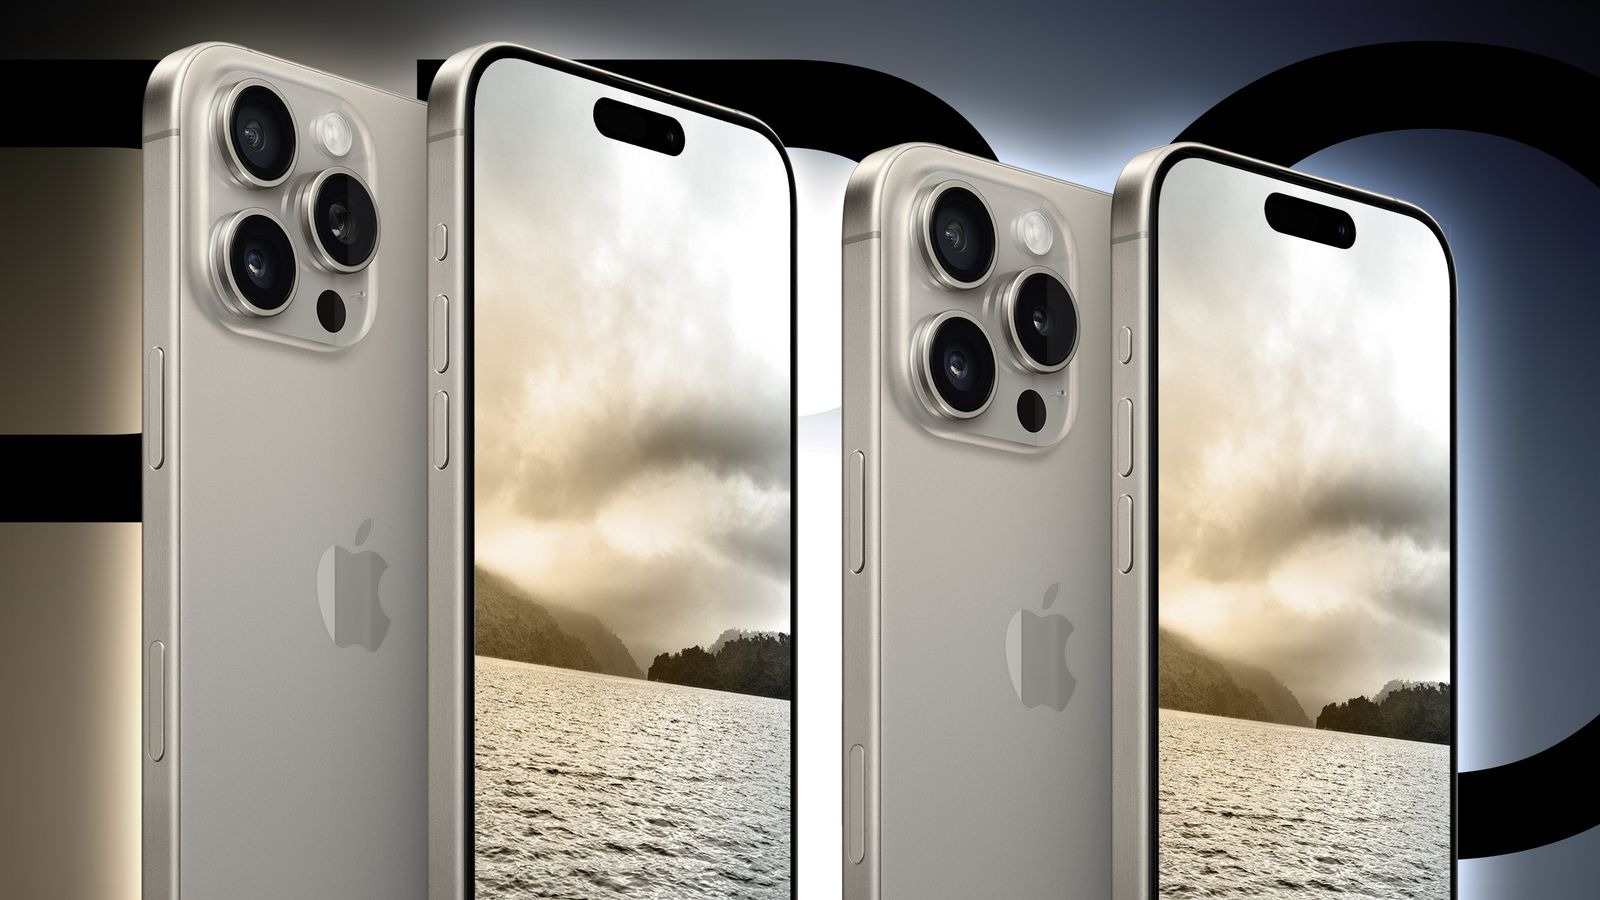 iPhone 16 Pro sẽ có nâng cấp 